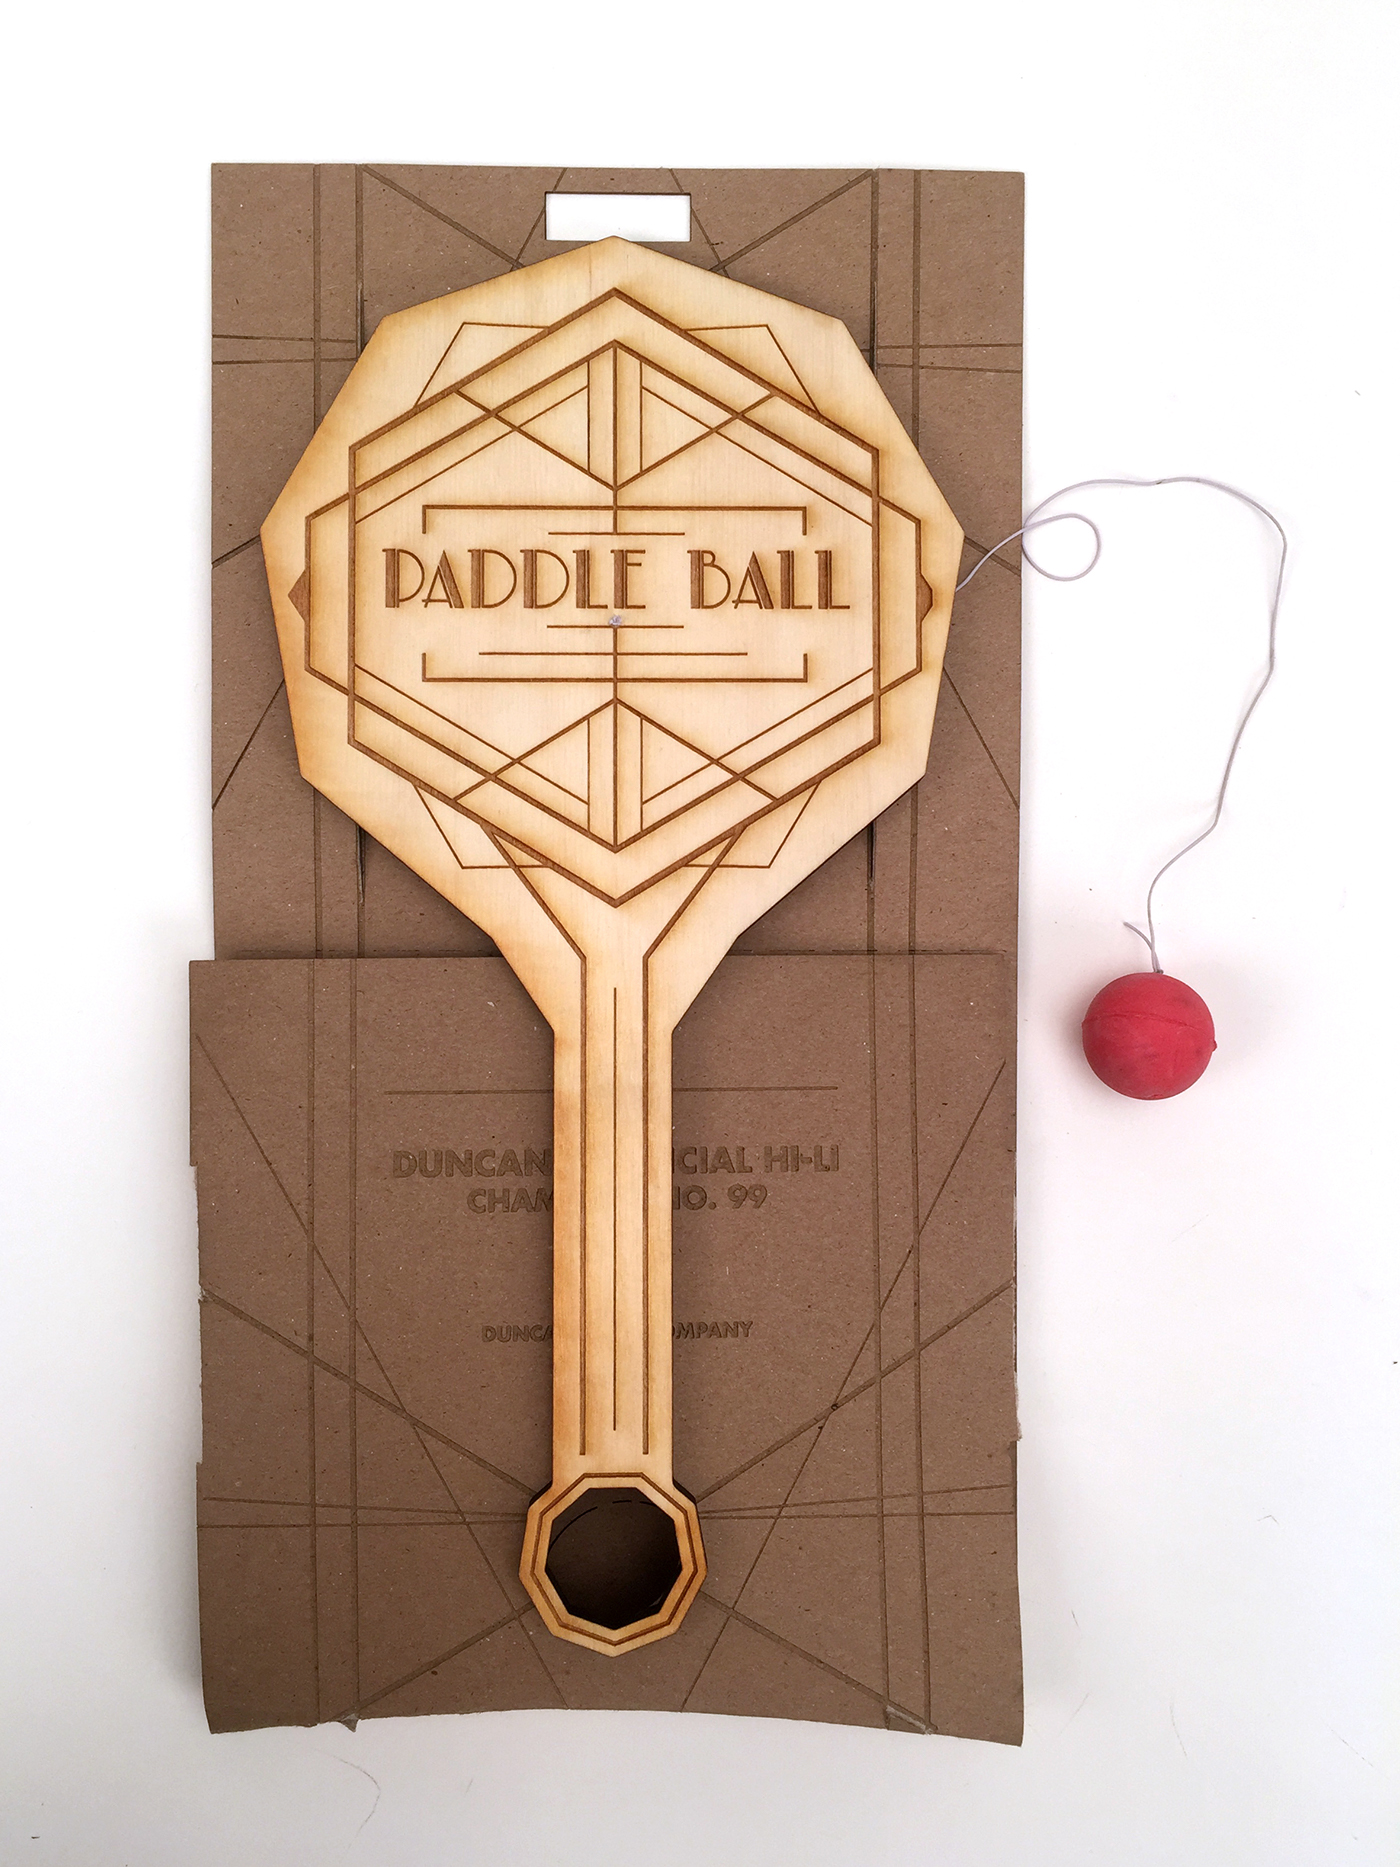 #KU #kudesign #RachelDonovan #paddleball #Sustainability  #redesign  #packaging